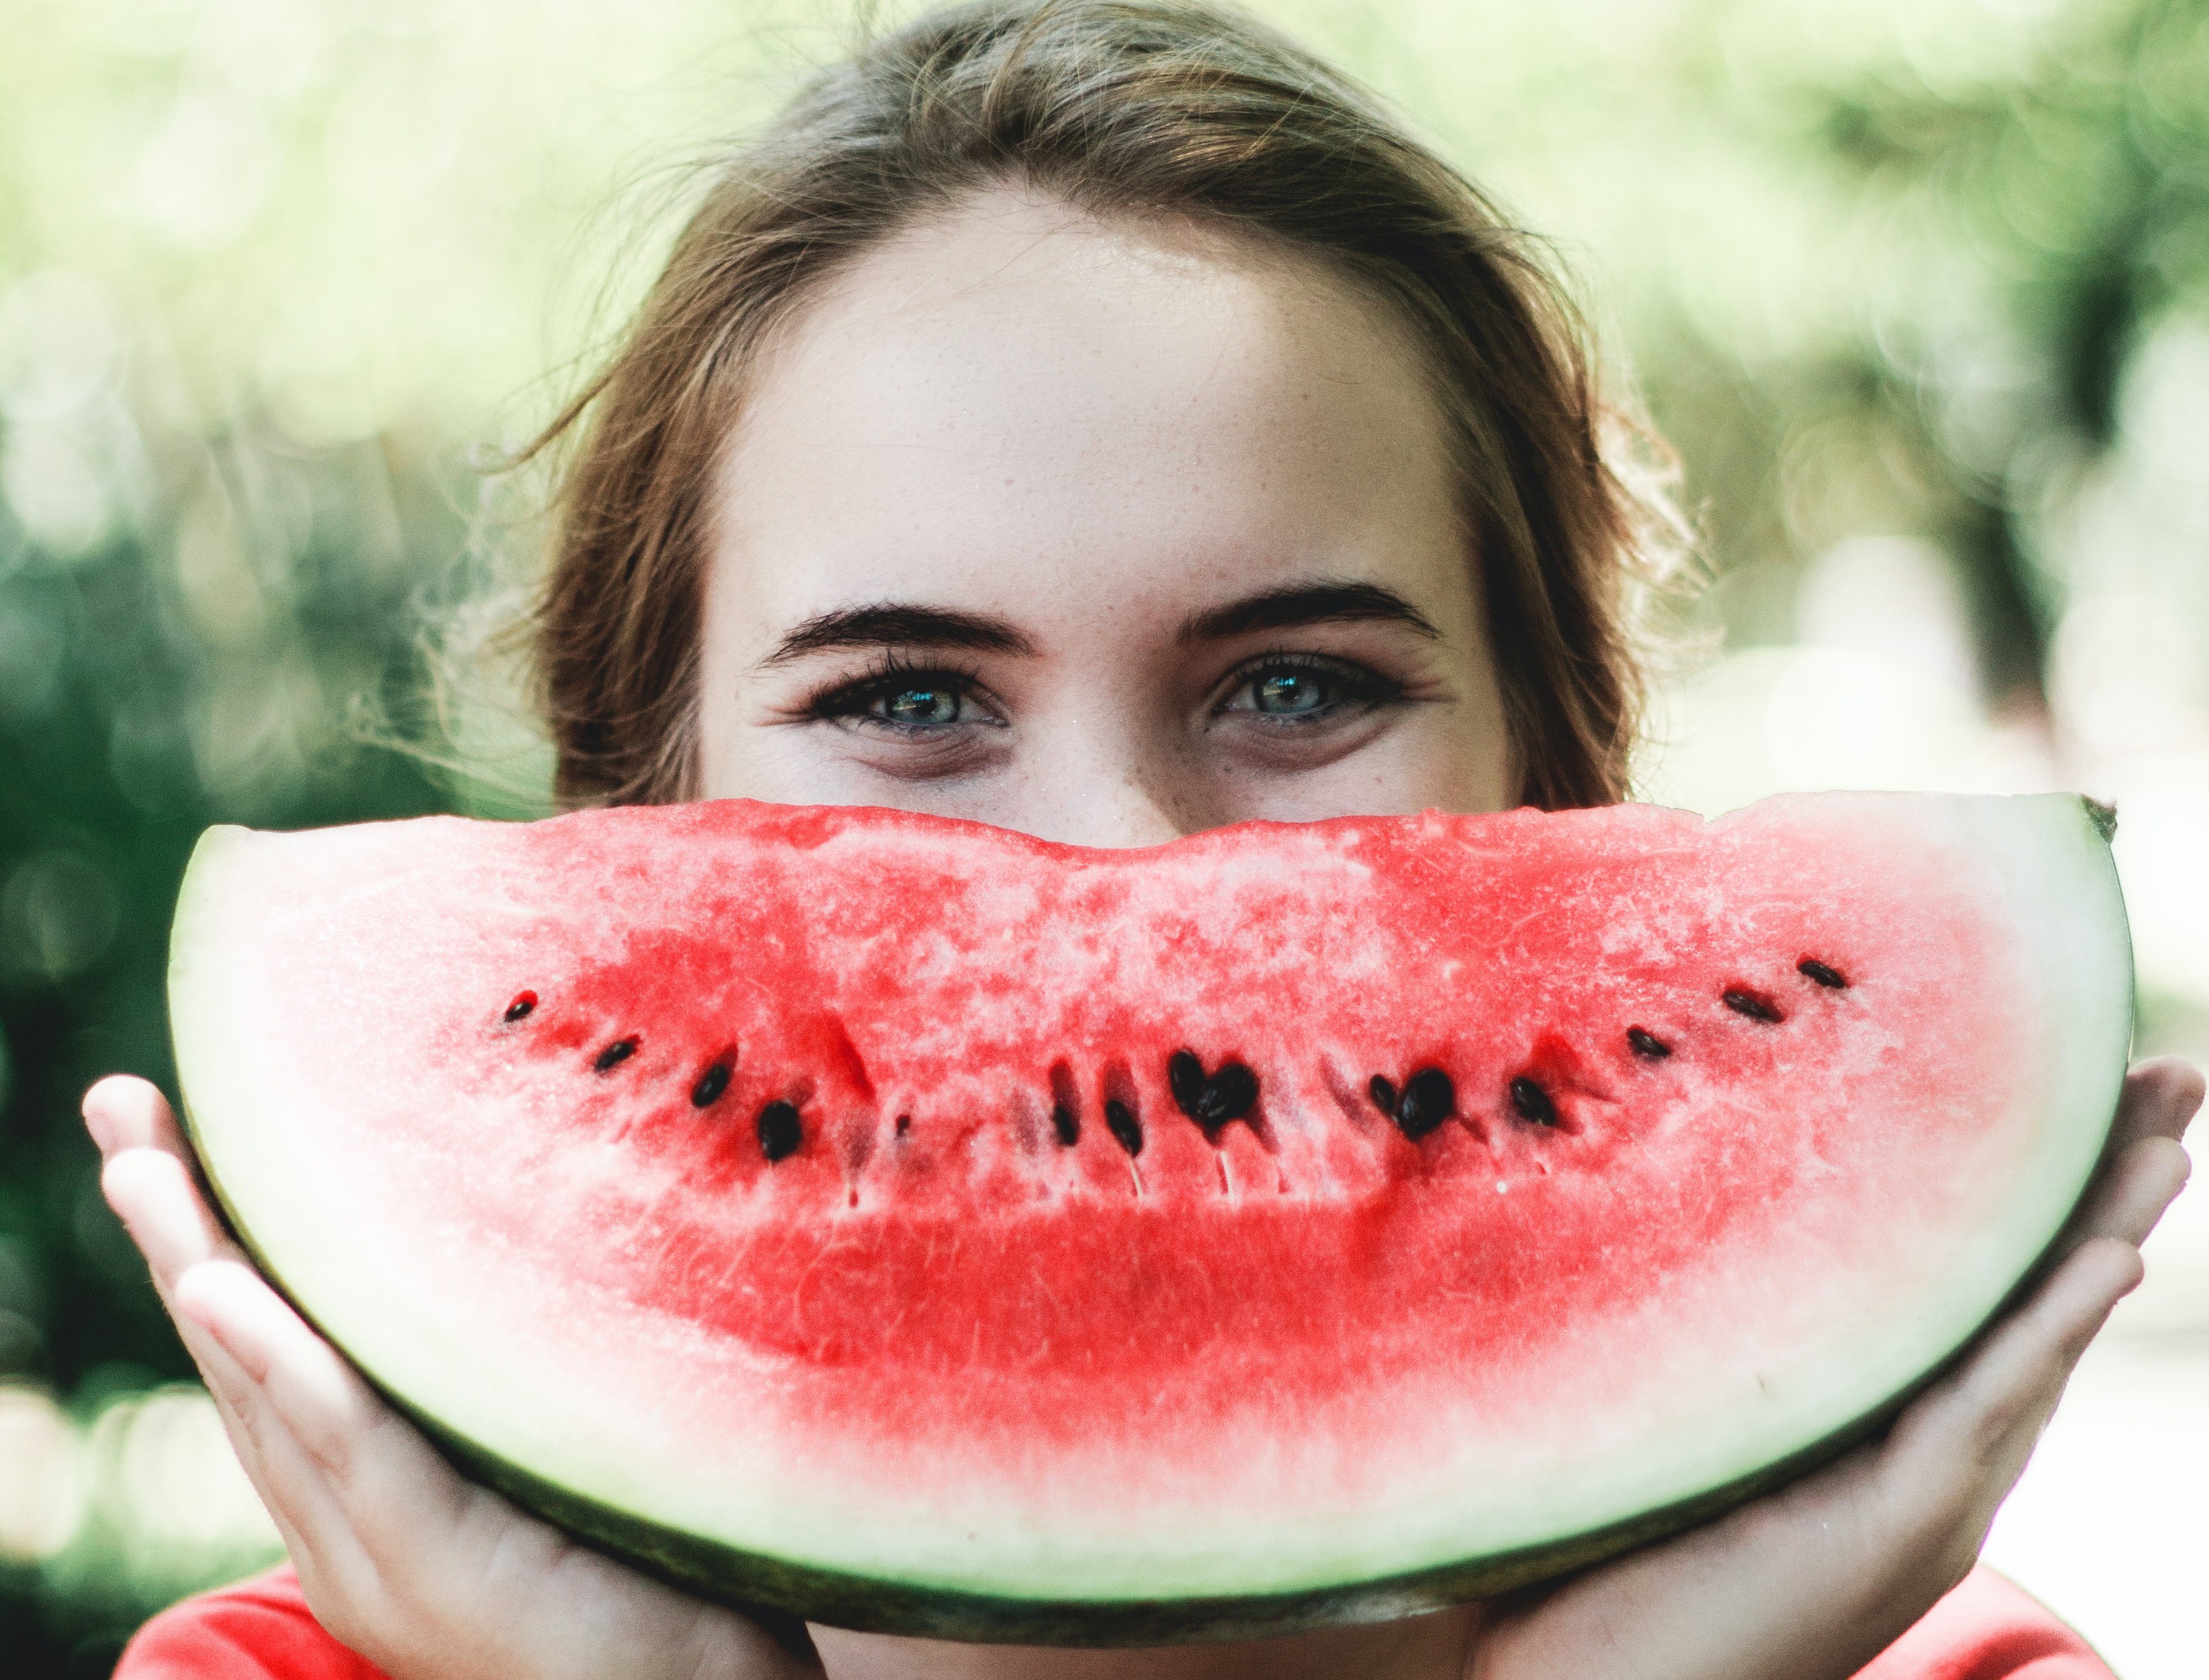 Estudo da Universidade Edith Cowan encontrou relação entre a ingestão de frutas e vegetais e a diminuição dos níveis de estresse (Foto: Caju Gomes / Unsplash)